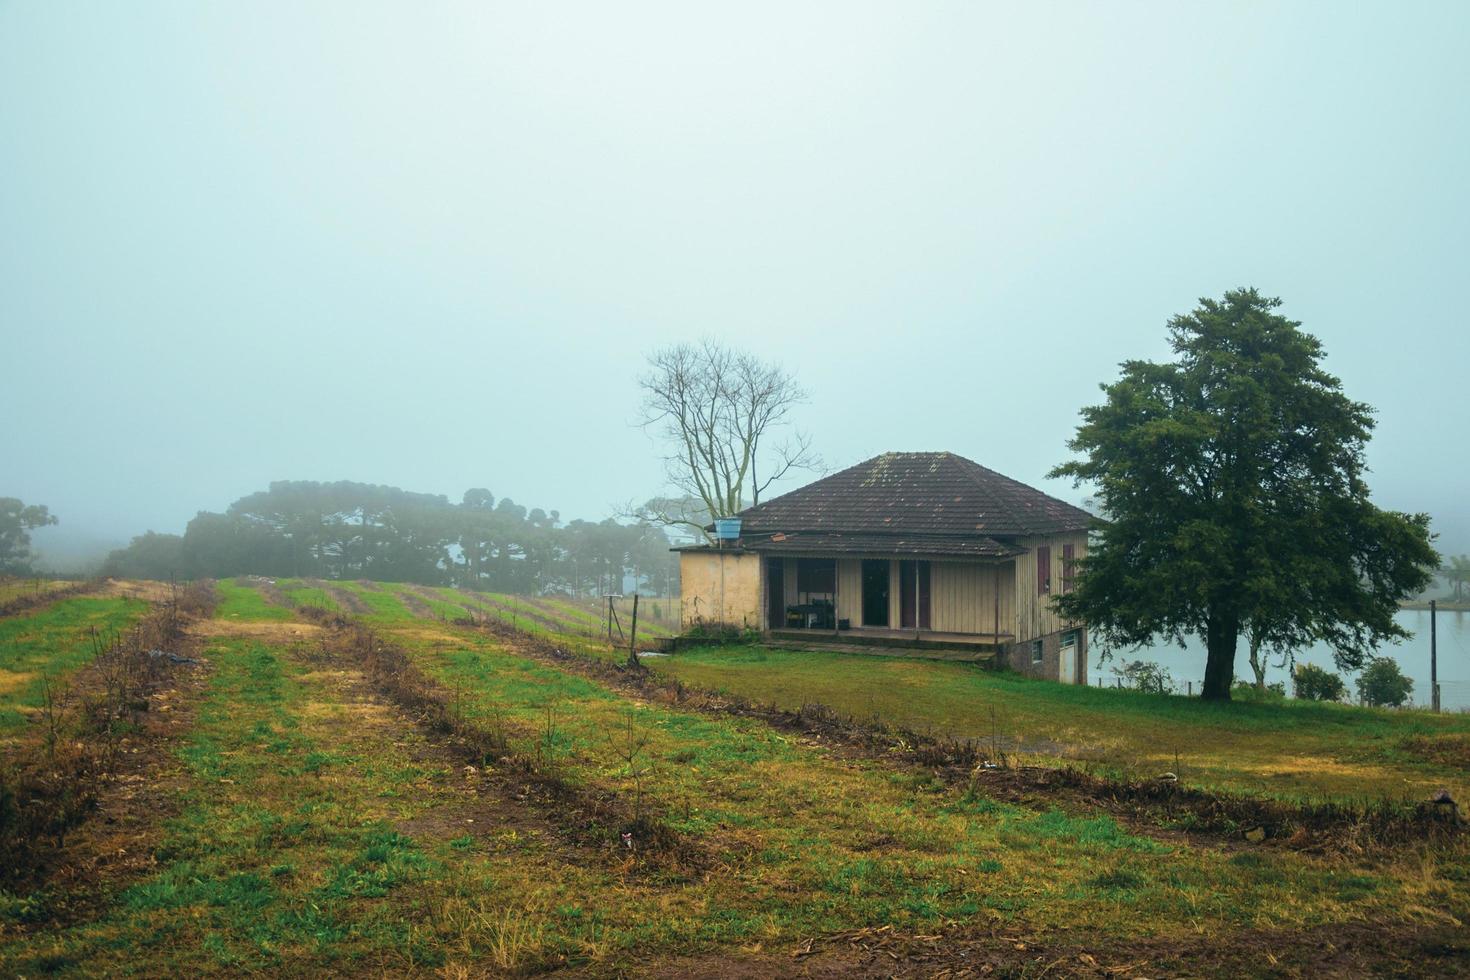 bento goncalves, brazilië - 14 juli 2019. plattelandslandschap met gecultiveerde velden, boerderij en meer in een mistige dag in de buurt van bento goncalves. foto